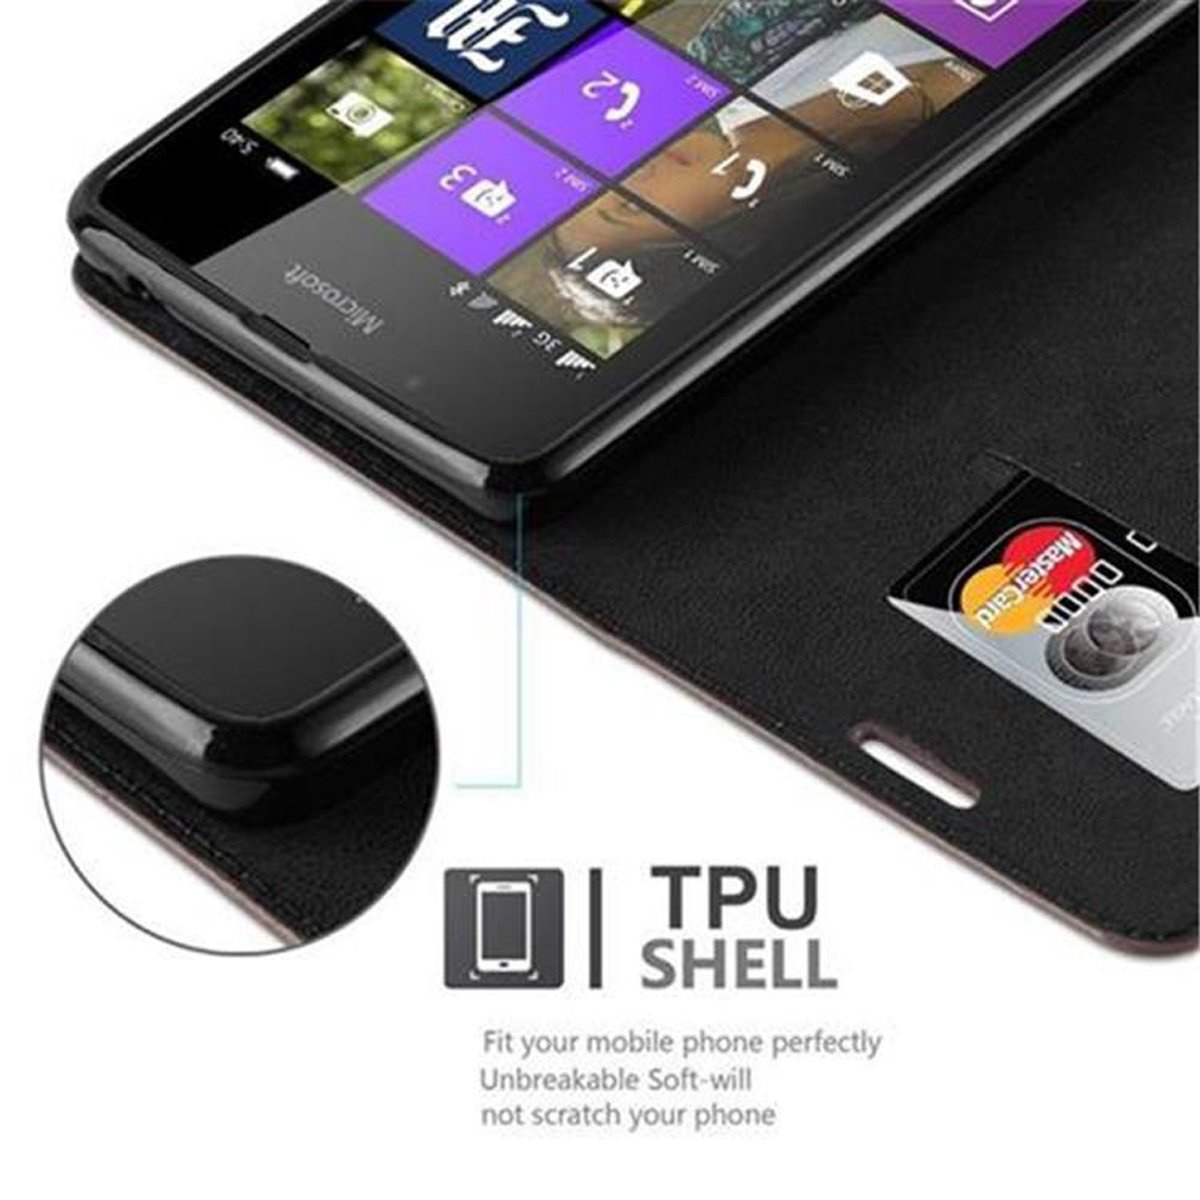 BRAUN KAFFEE Magnet, Lumia Invisible Hülle Nokia, Book CADORABO 540, Bookcover,